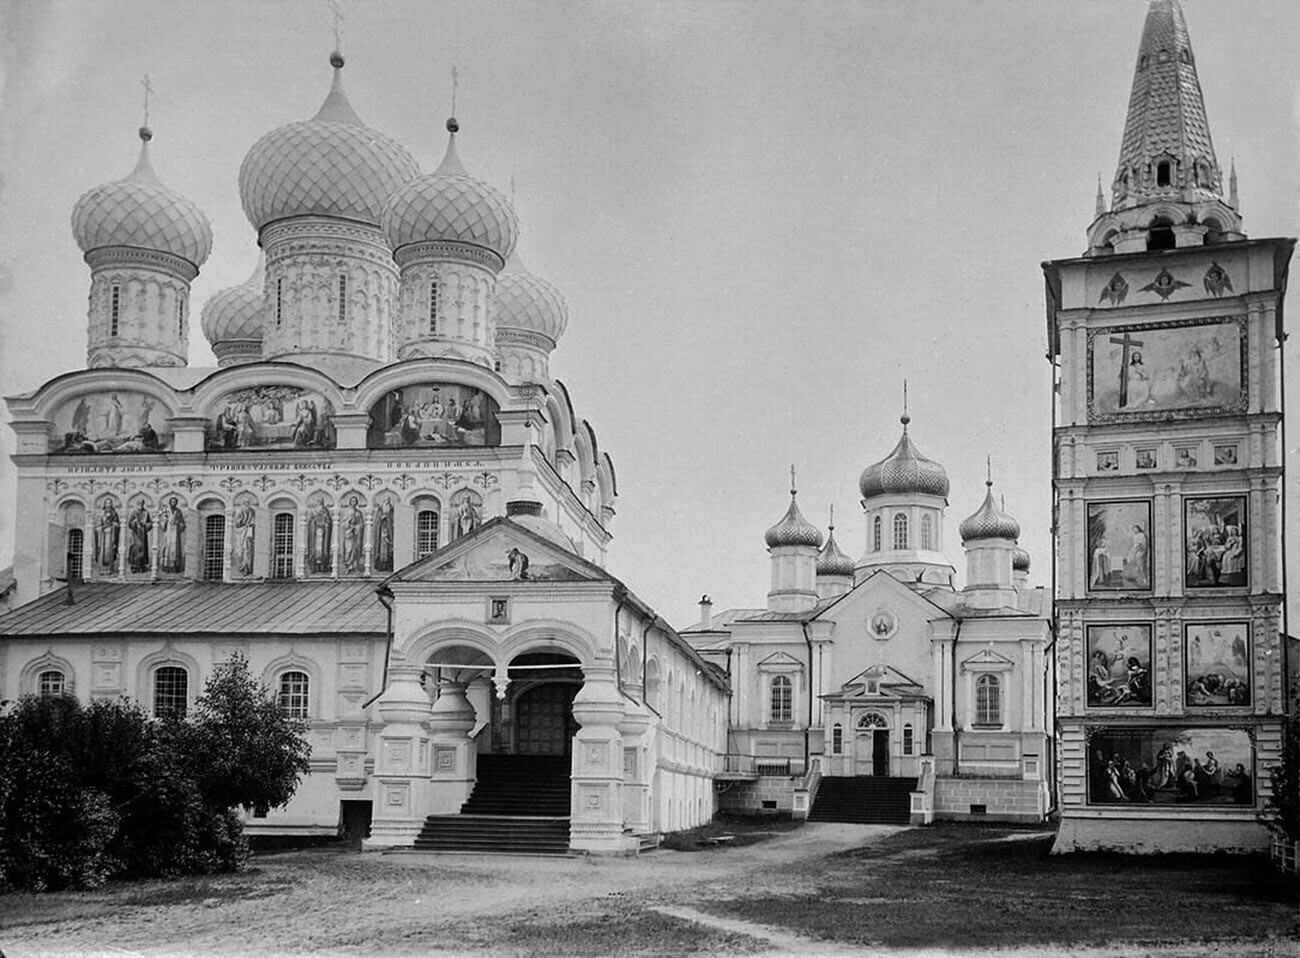 O Mosteiro Ipatiev no começo do século 20.
